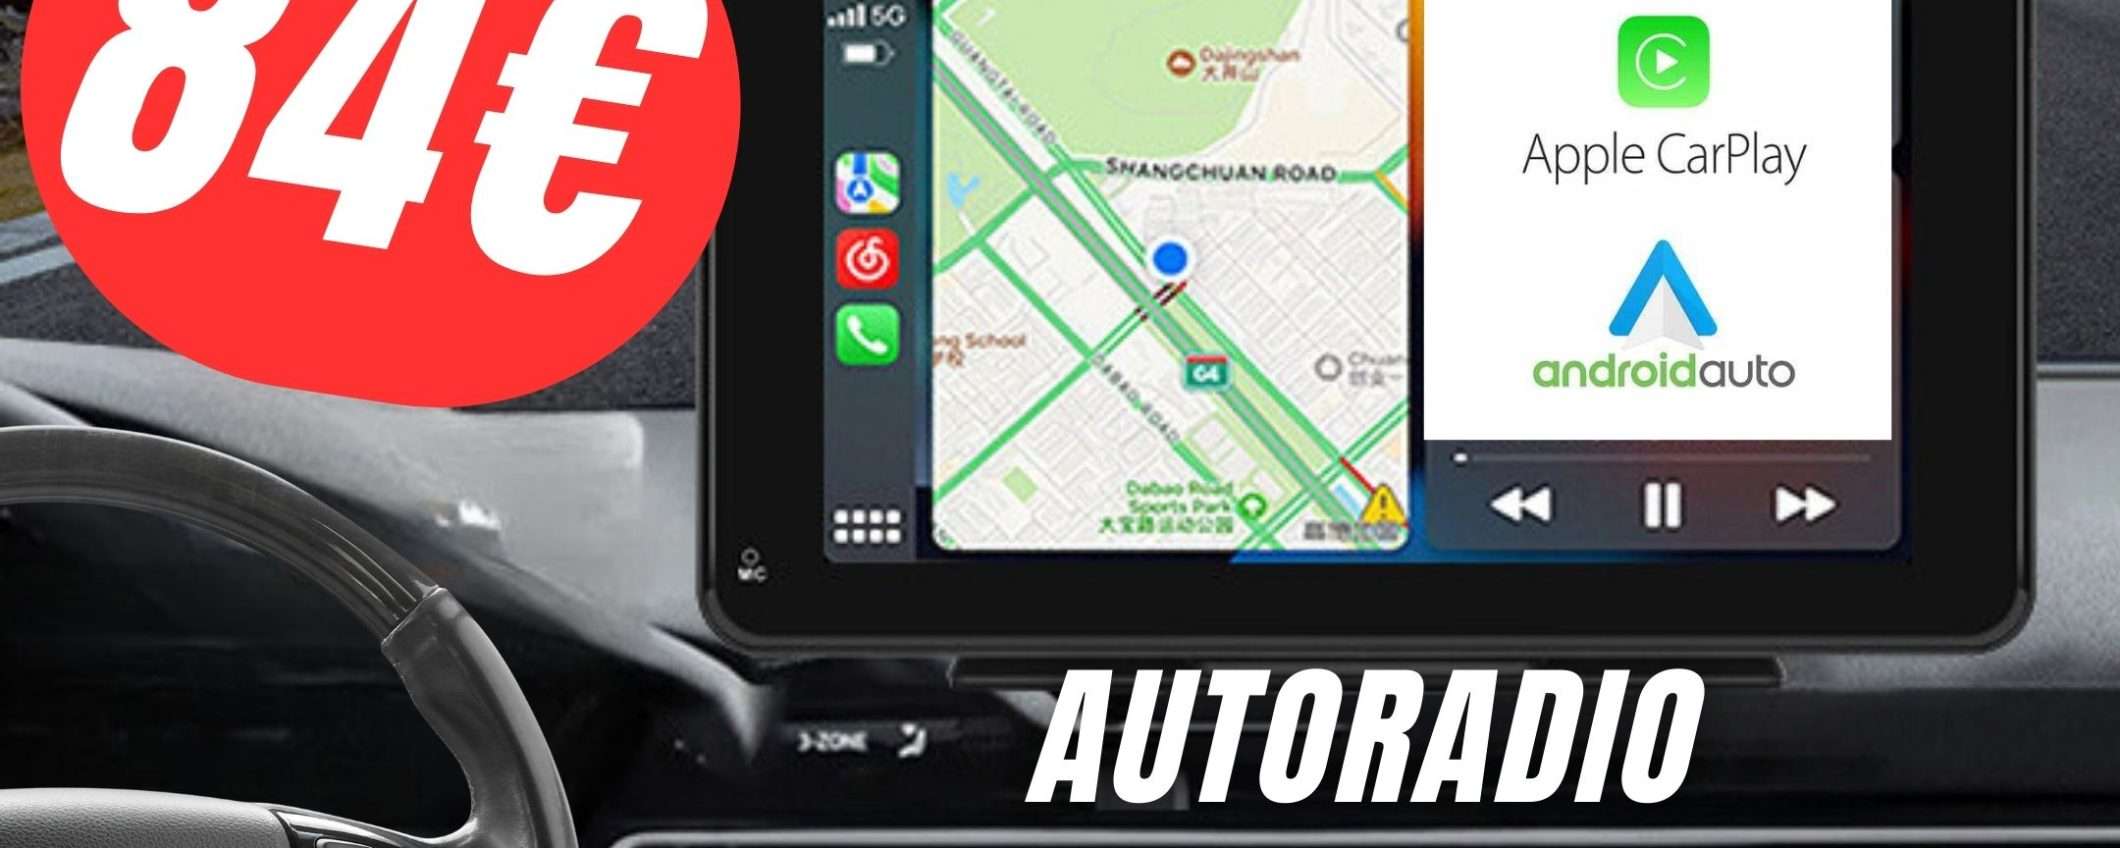 COUPON ESCLUSIVO per L'Autoradio con Apple Carplay e Android Auto!